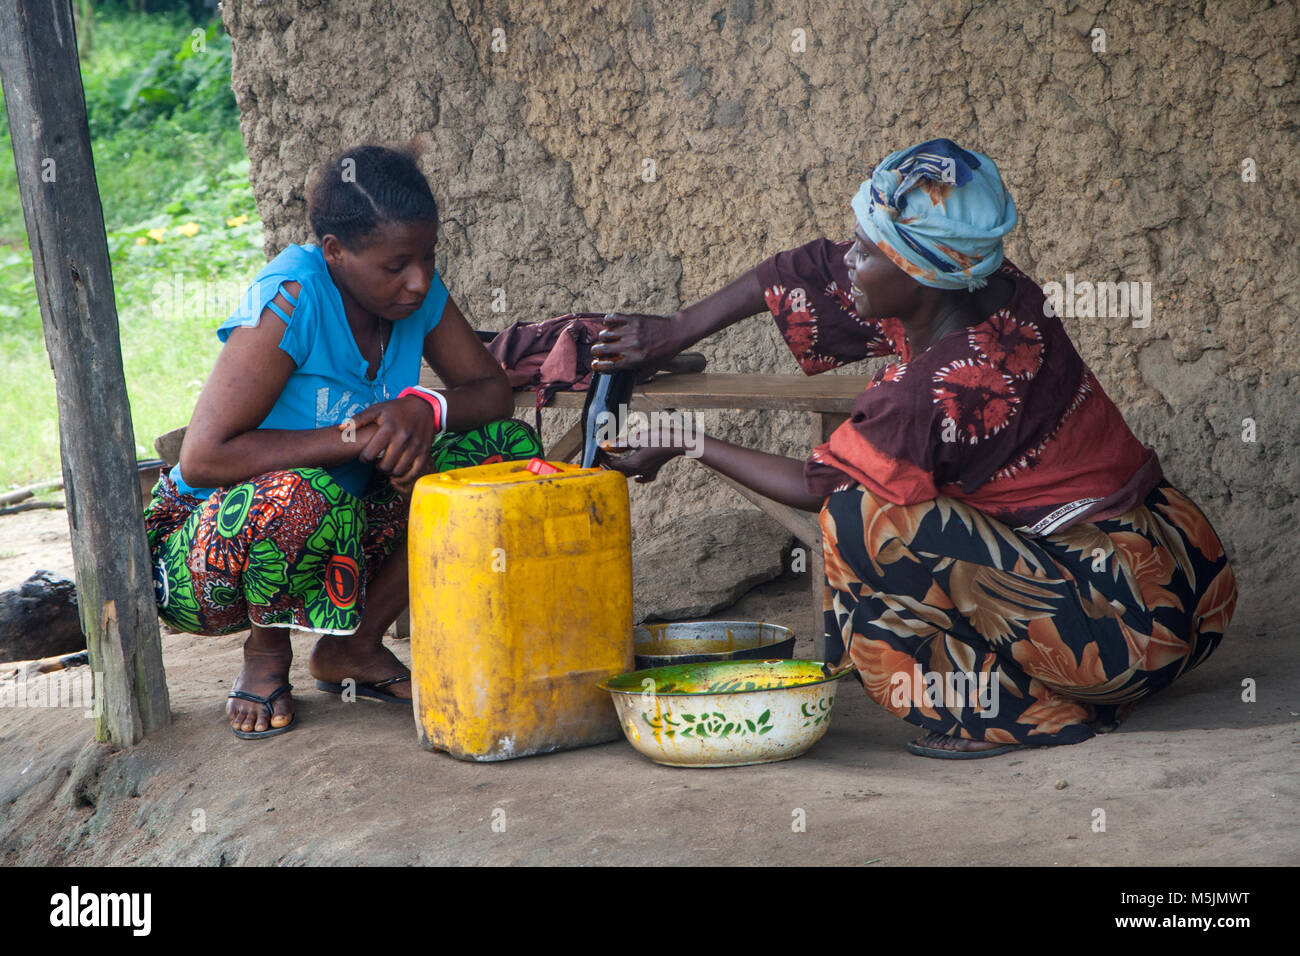 Women  sell palm oil in rural Sierra Leone Stock Photo